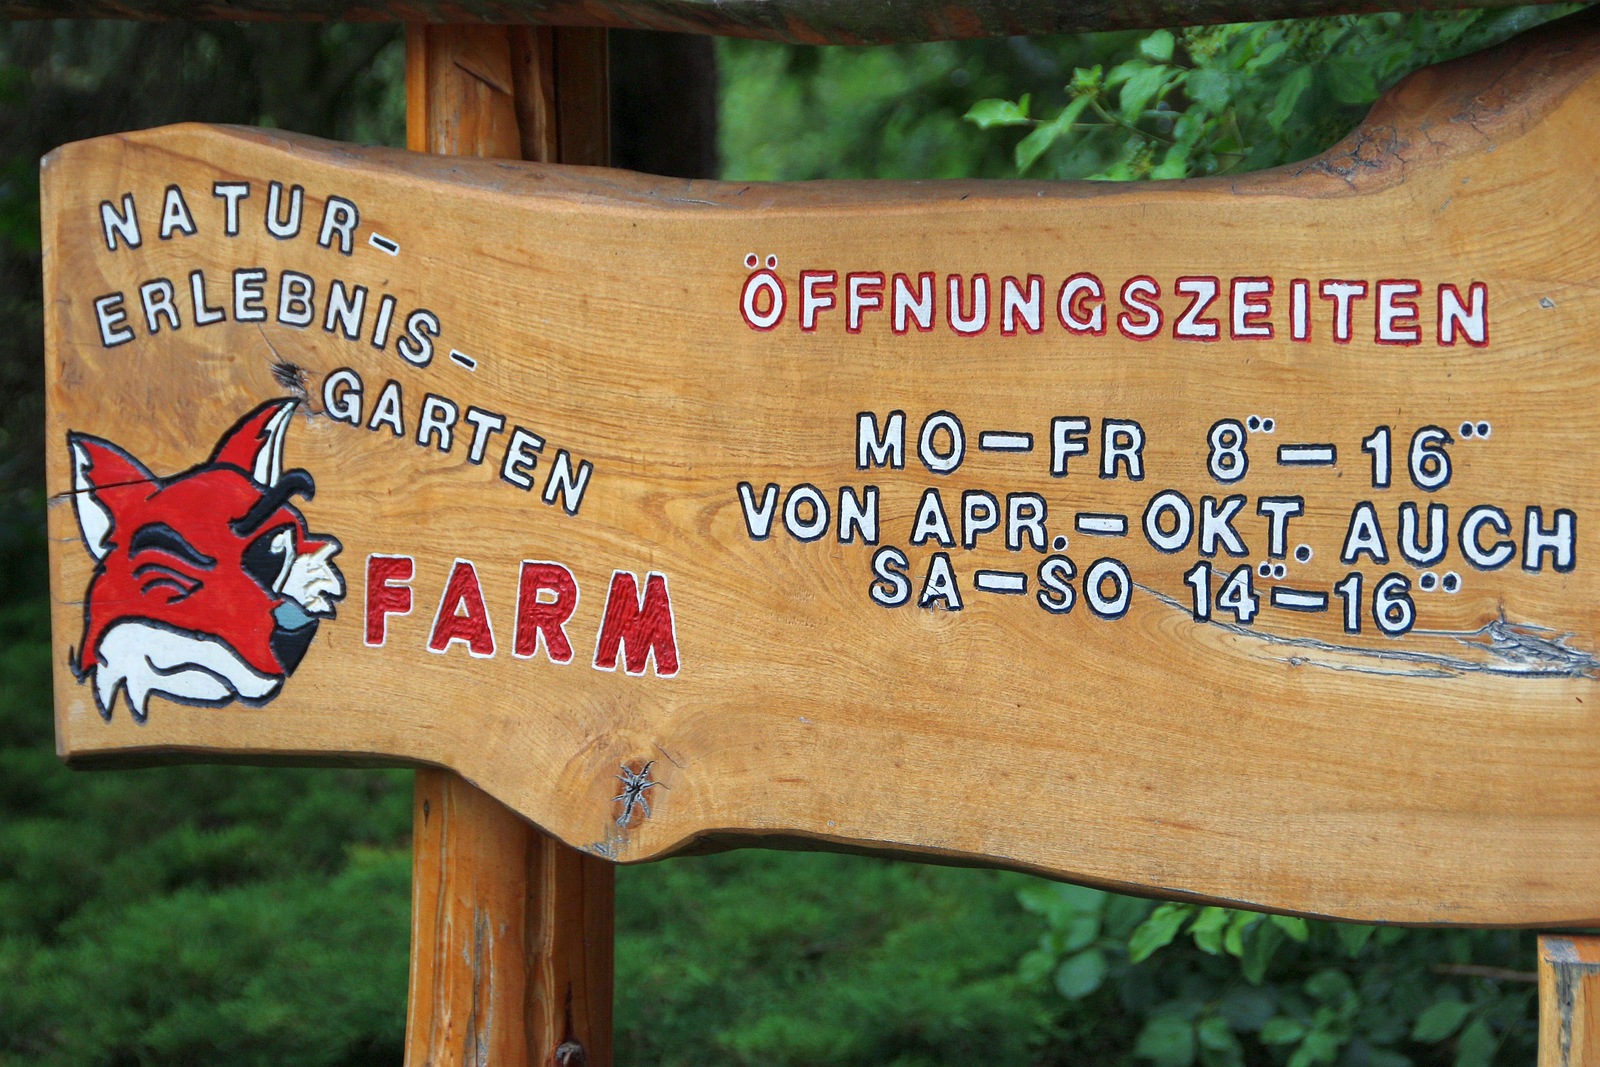 Eingangsschild mit Öffnungszeiten, Bild: Bernd Sprenger